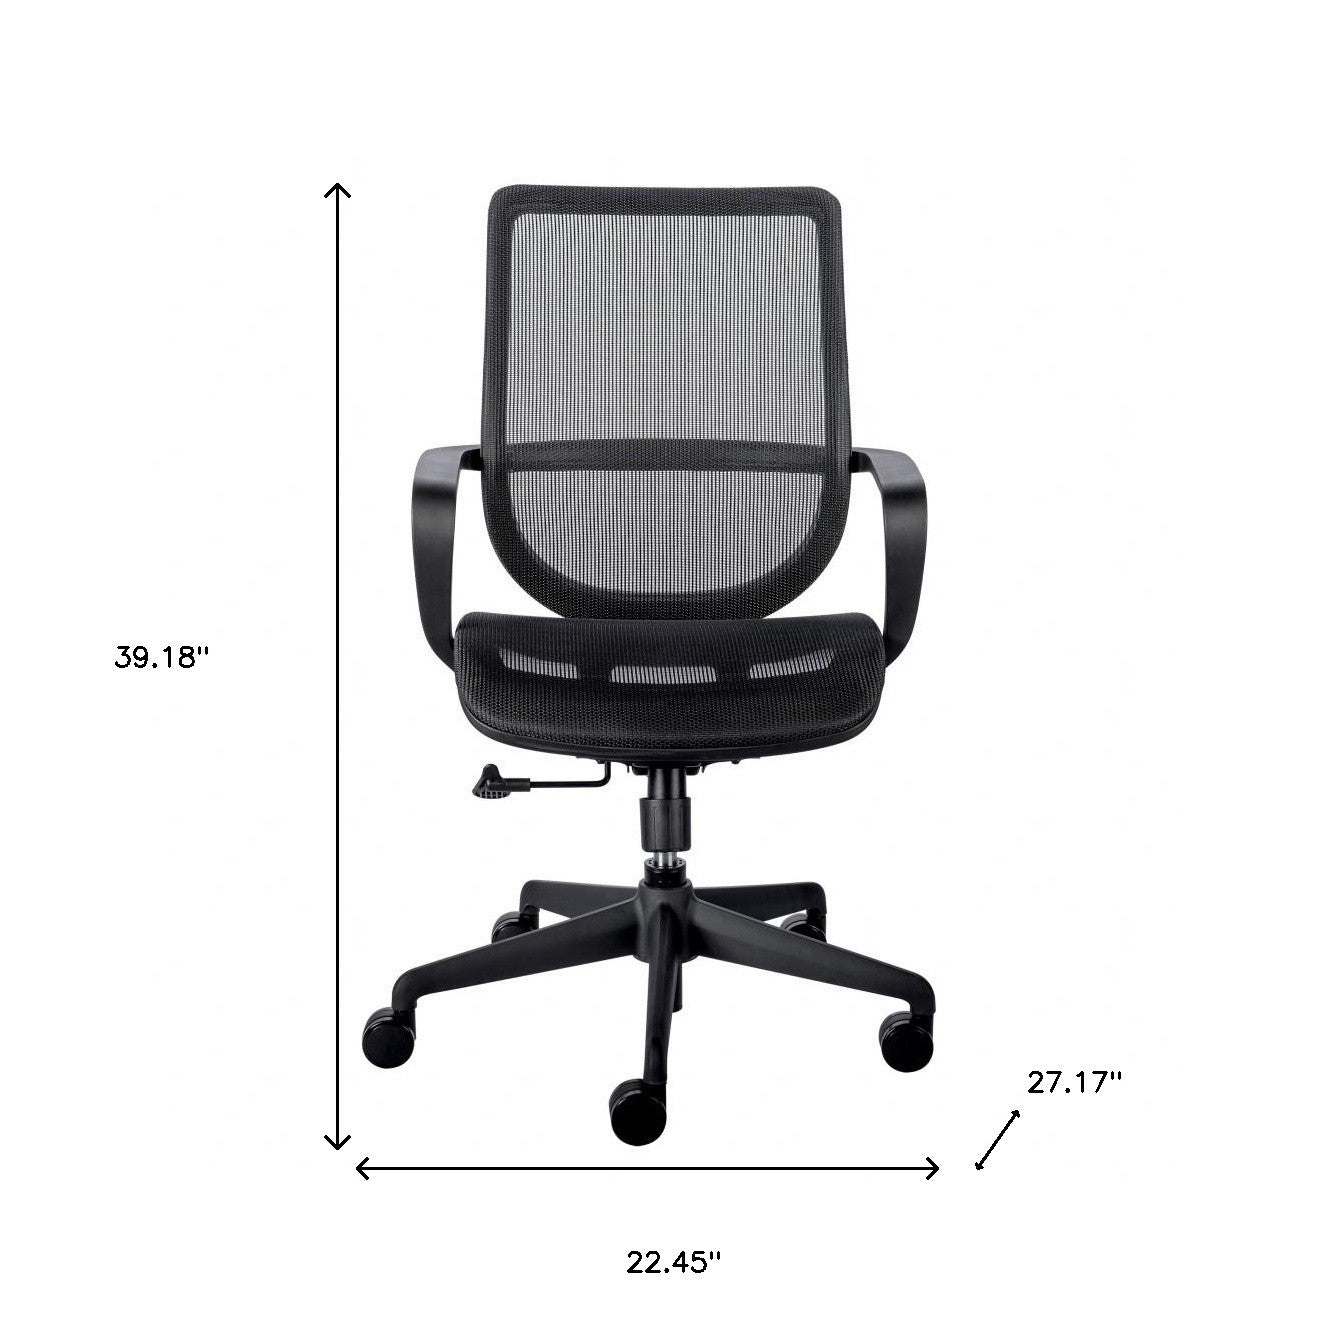 Black Swivel Adjustable Task Chair Mesh Back Plastic Frame